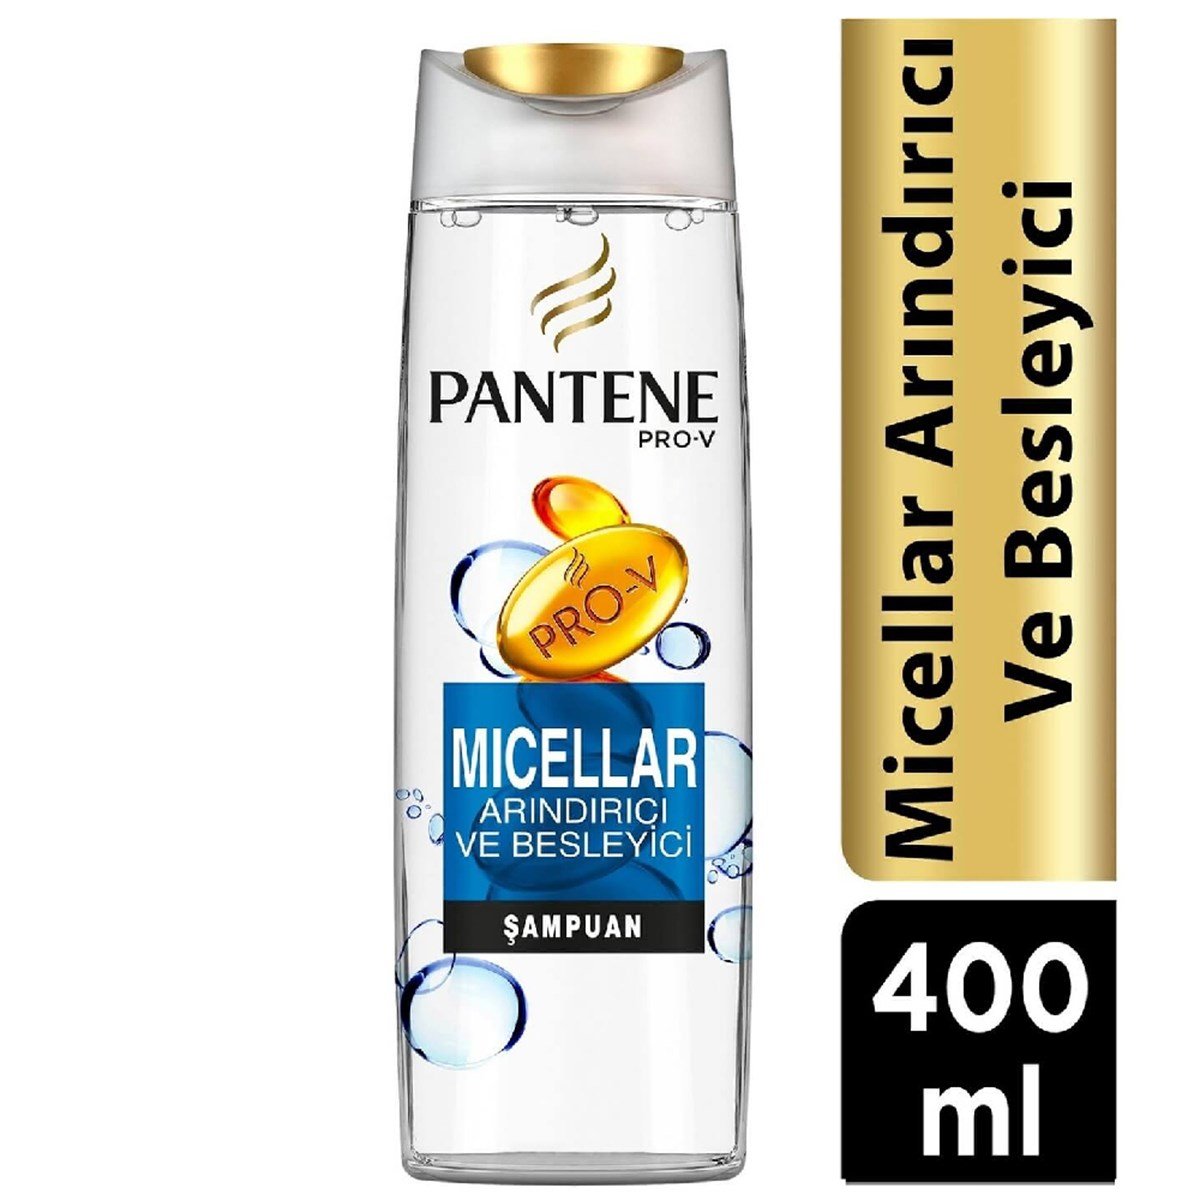 Pantene Şampuan Micellar Arındırıcı ve Besleyici 400 ml - Platin